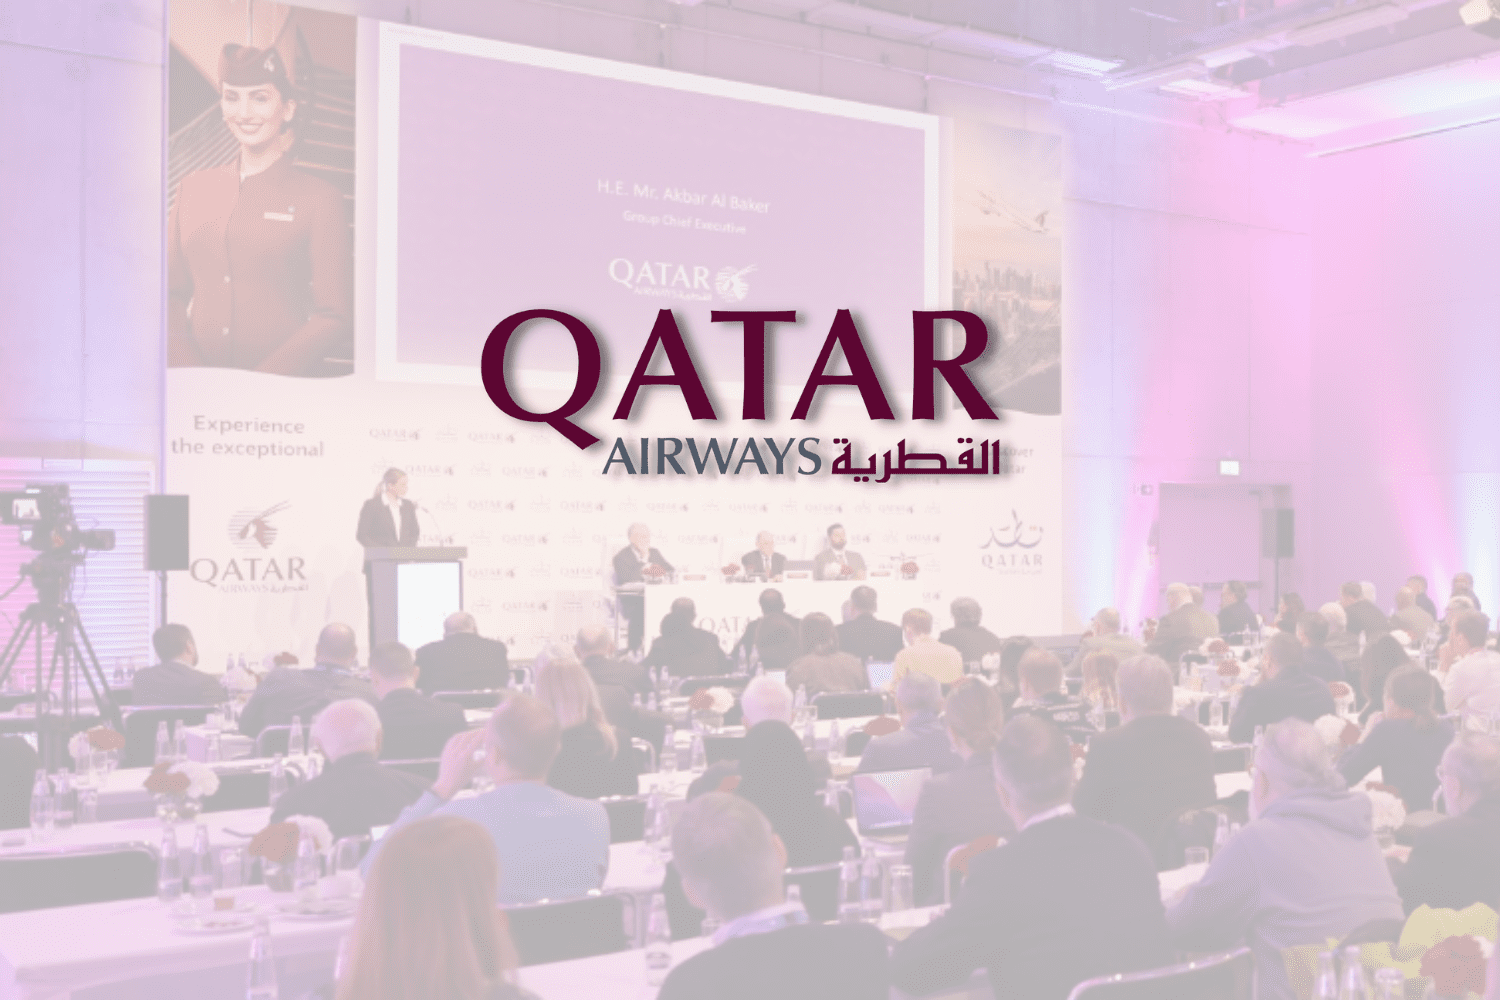 logo da Qatar Airways com fundo branco refletindo uma palestra com baixa opacidade